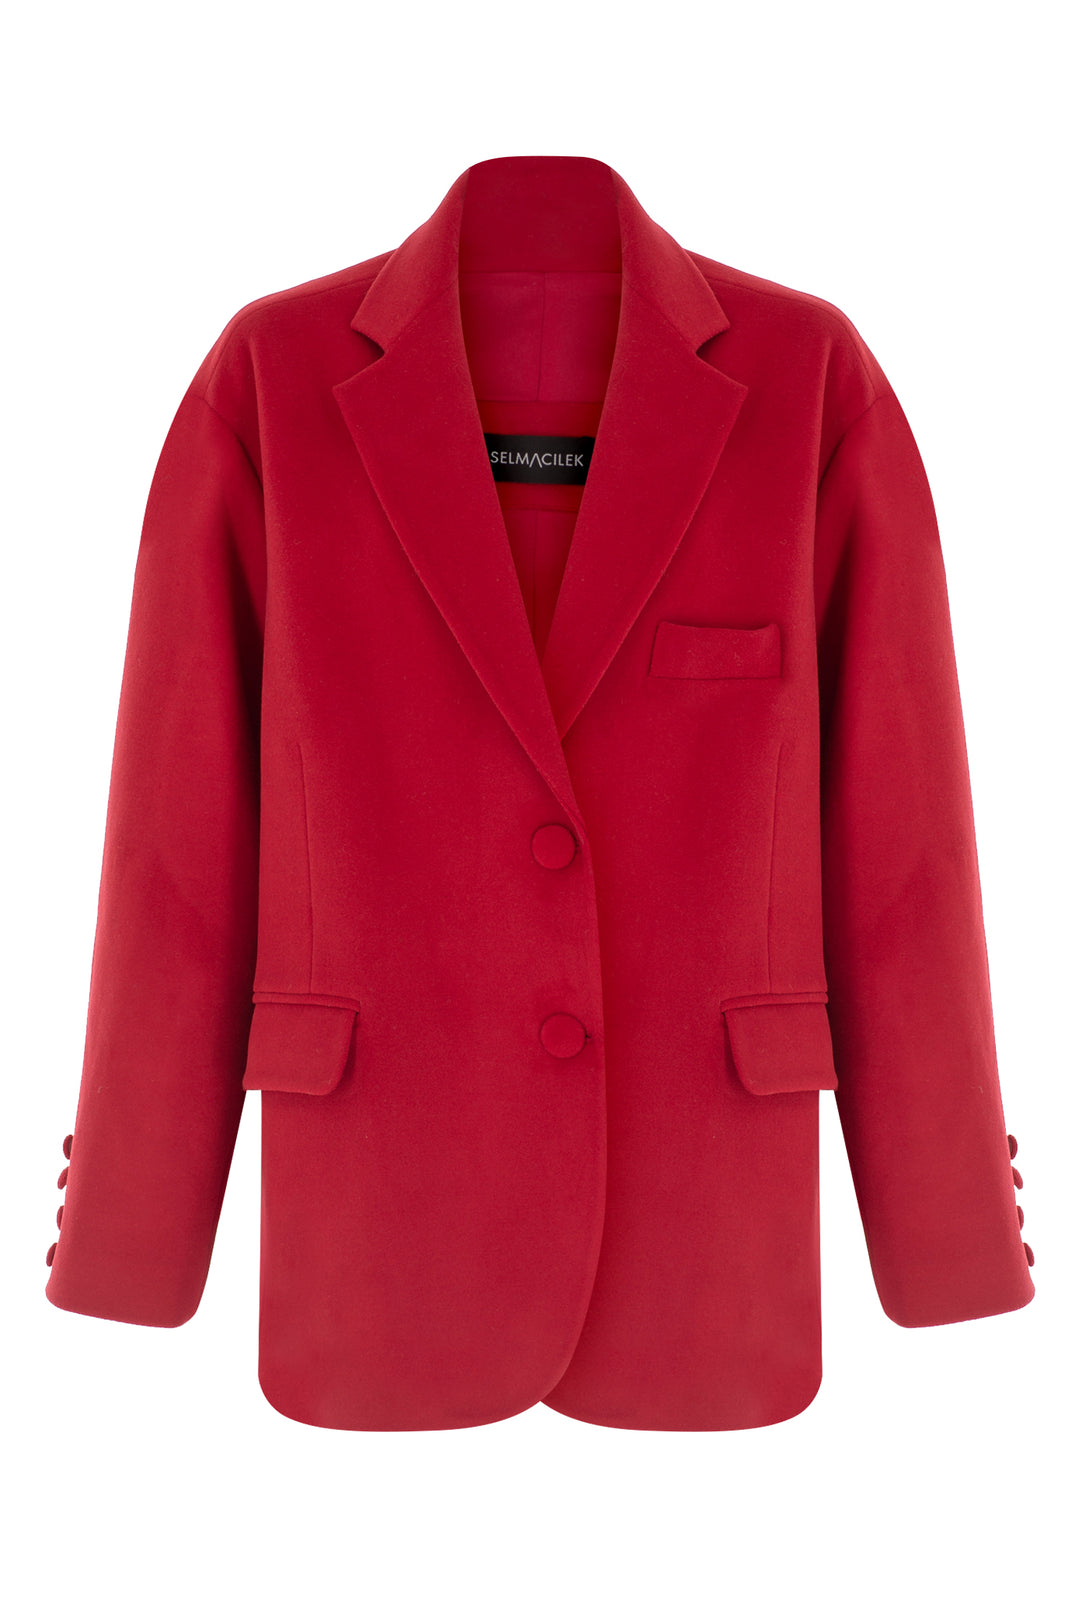 Kırmızı Kaşe Ceket